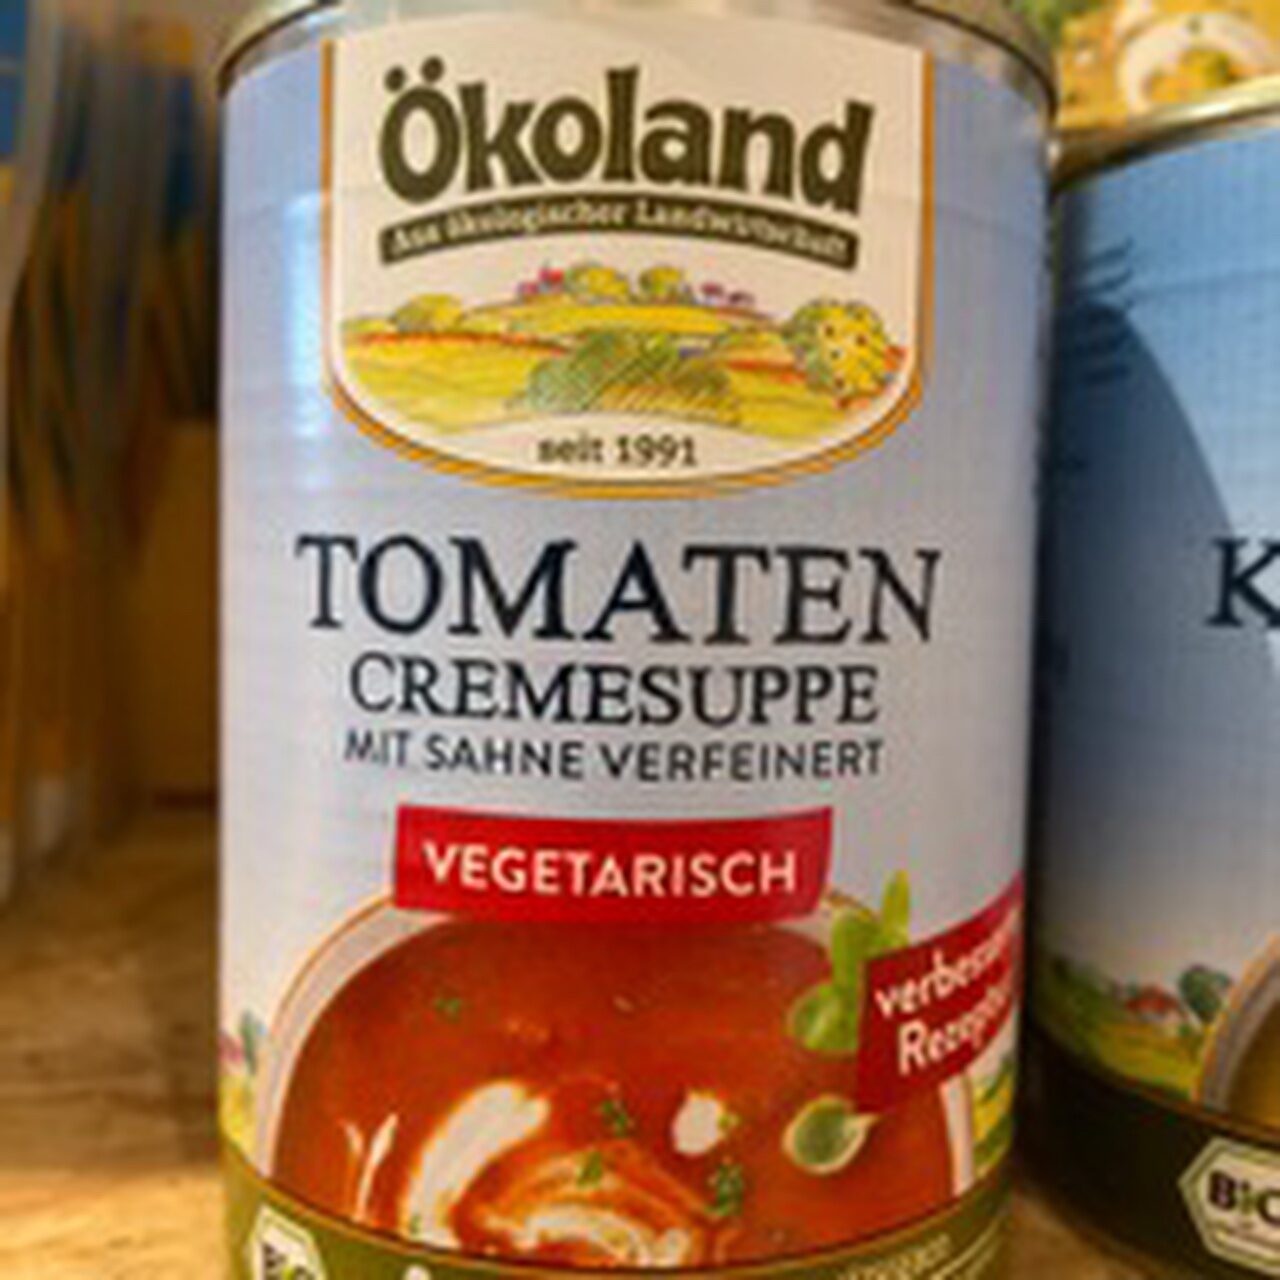 Tomaten Cremesuppe vegetarisch - Produkt